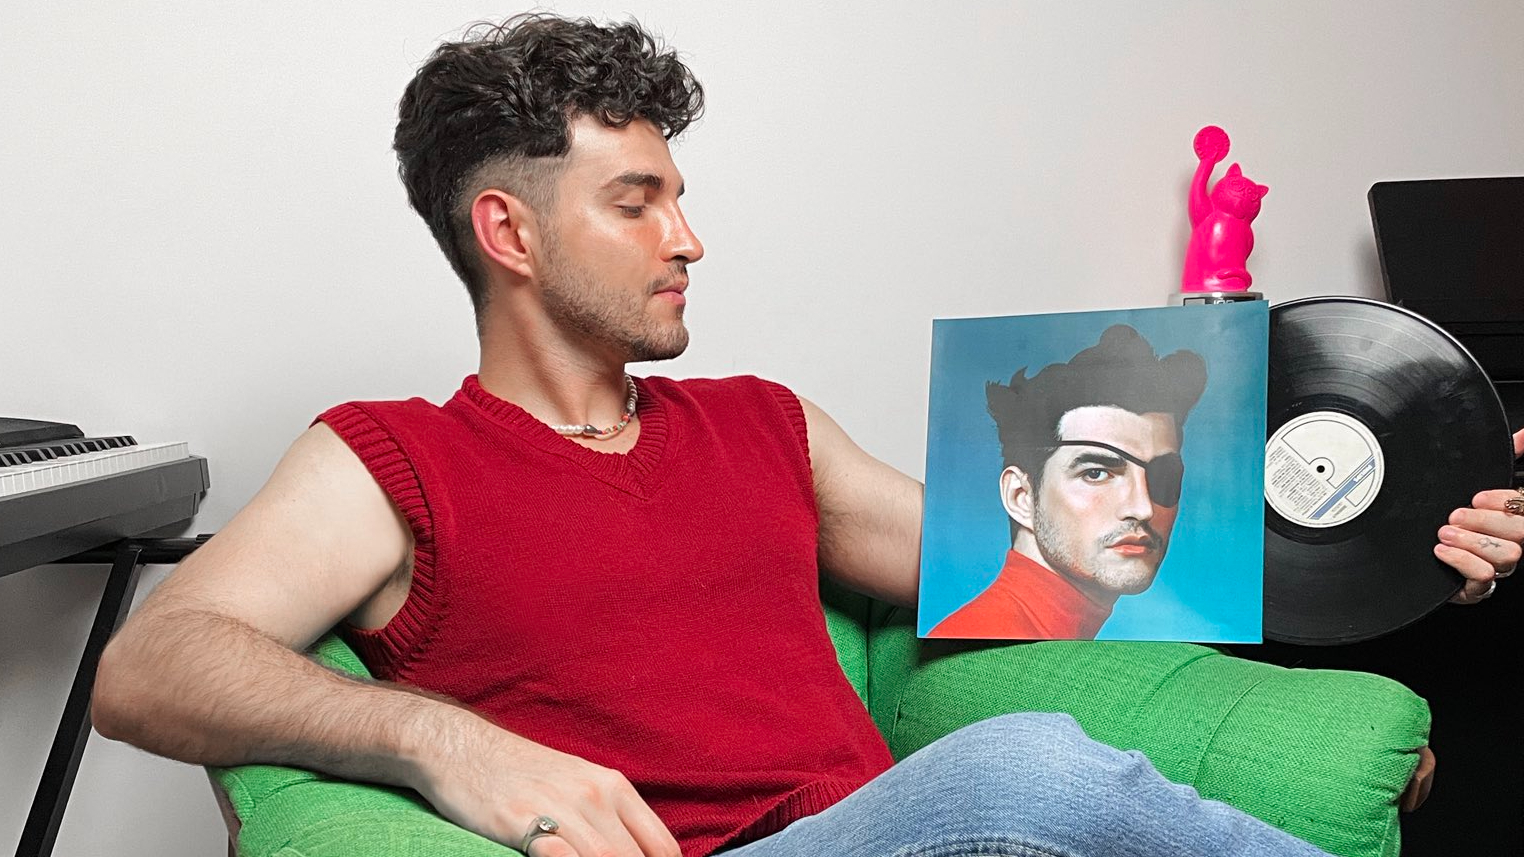 A imagem mostra o cantor Jão, um homem jovem e branco, sentado em uma poltrona verde. Ele está em sua casa, usando uma regata vermelha e calça jeans. Seu rosto está virado para a direita, direcionando seu olhar para o vinil segurado por sua mão.